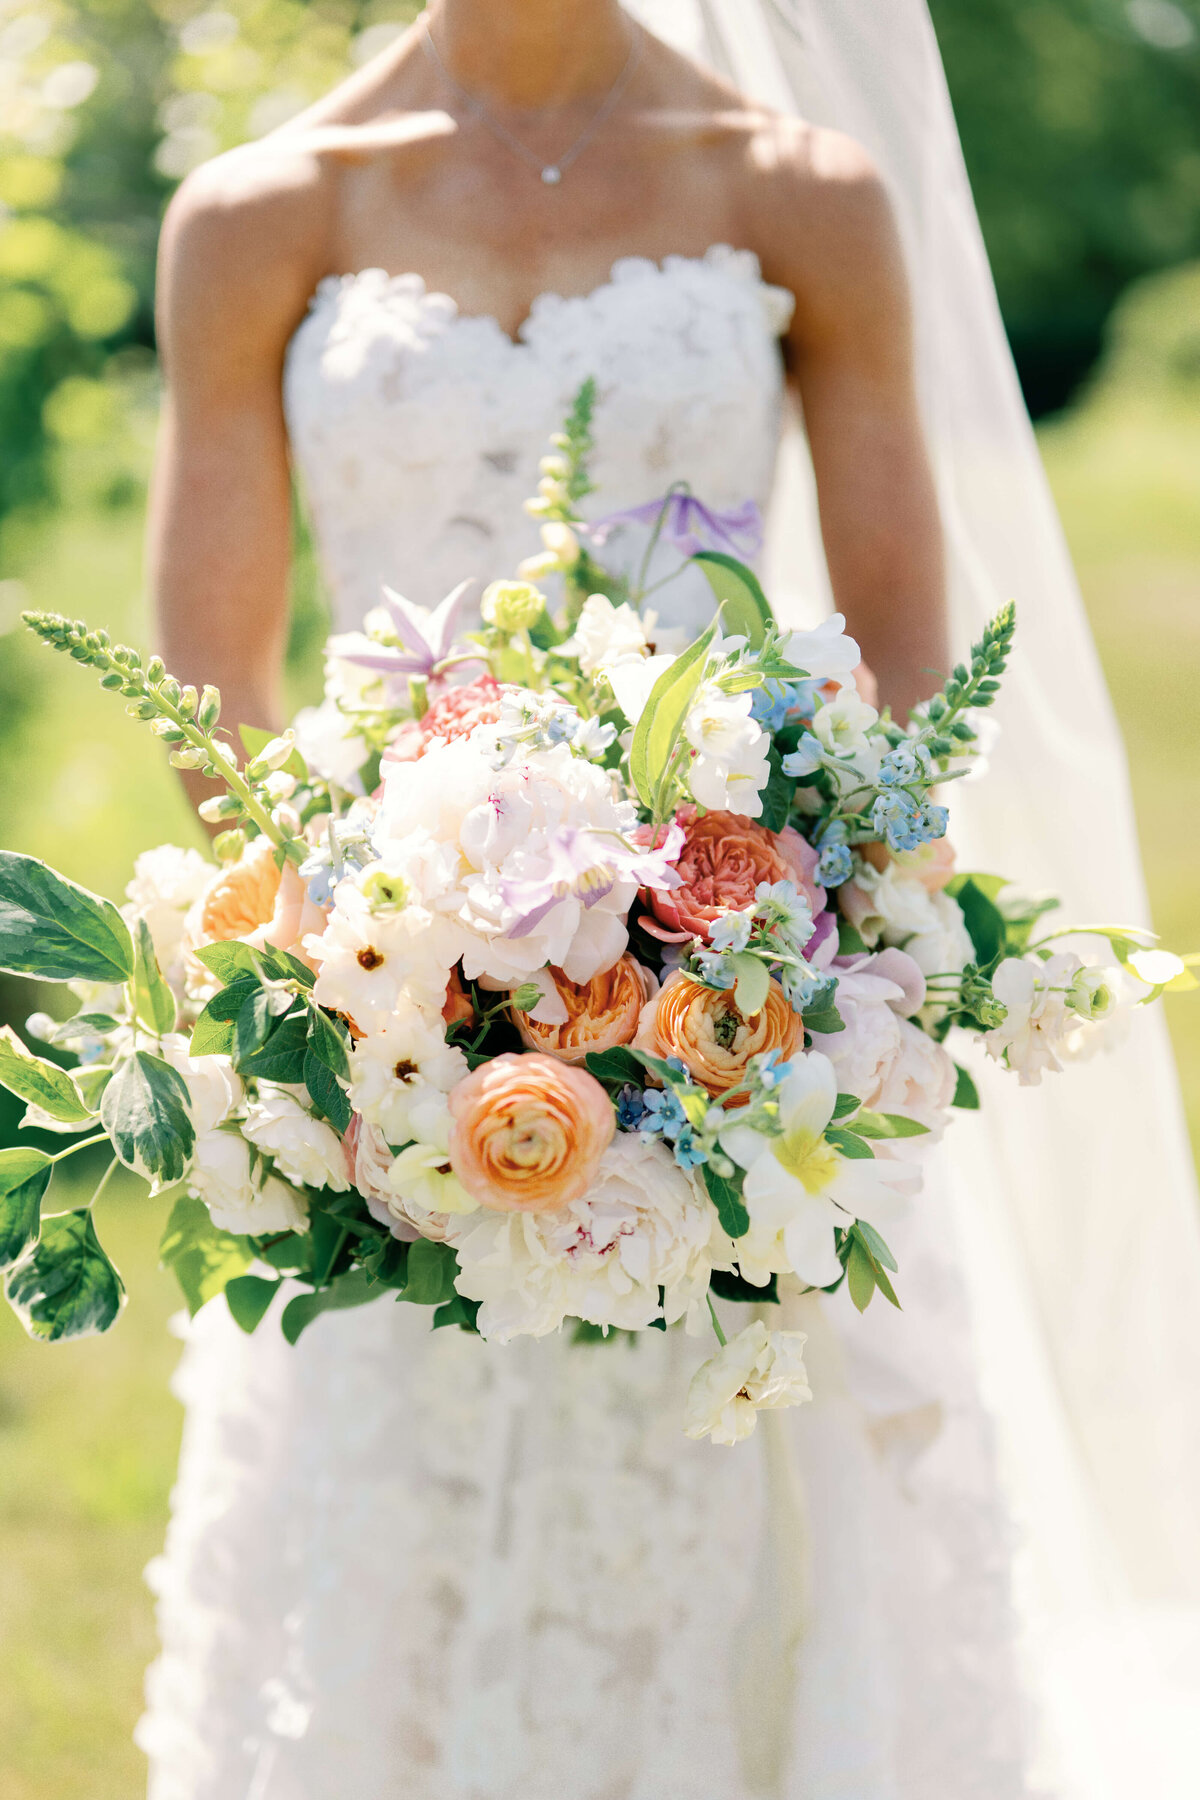 Bride holding colorful bouquet